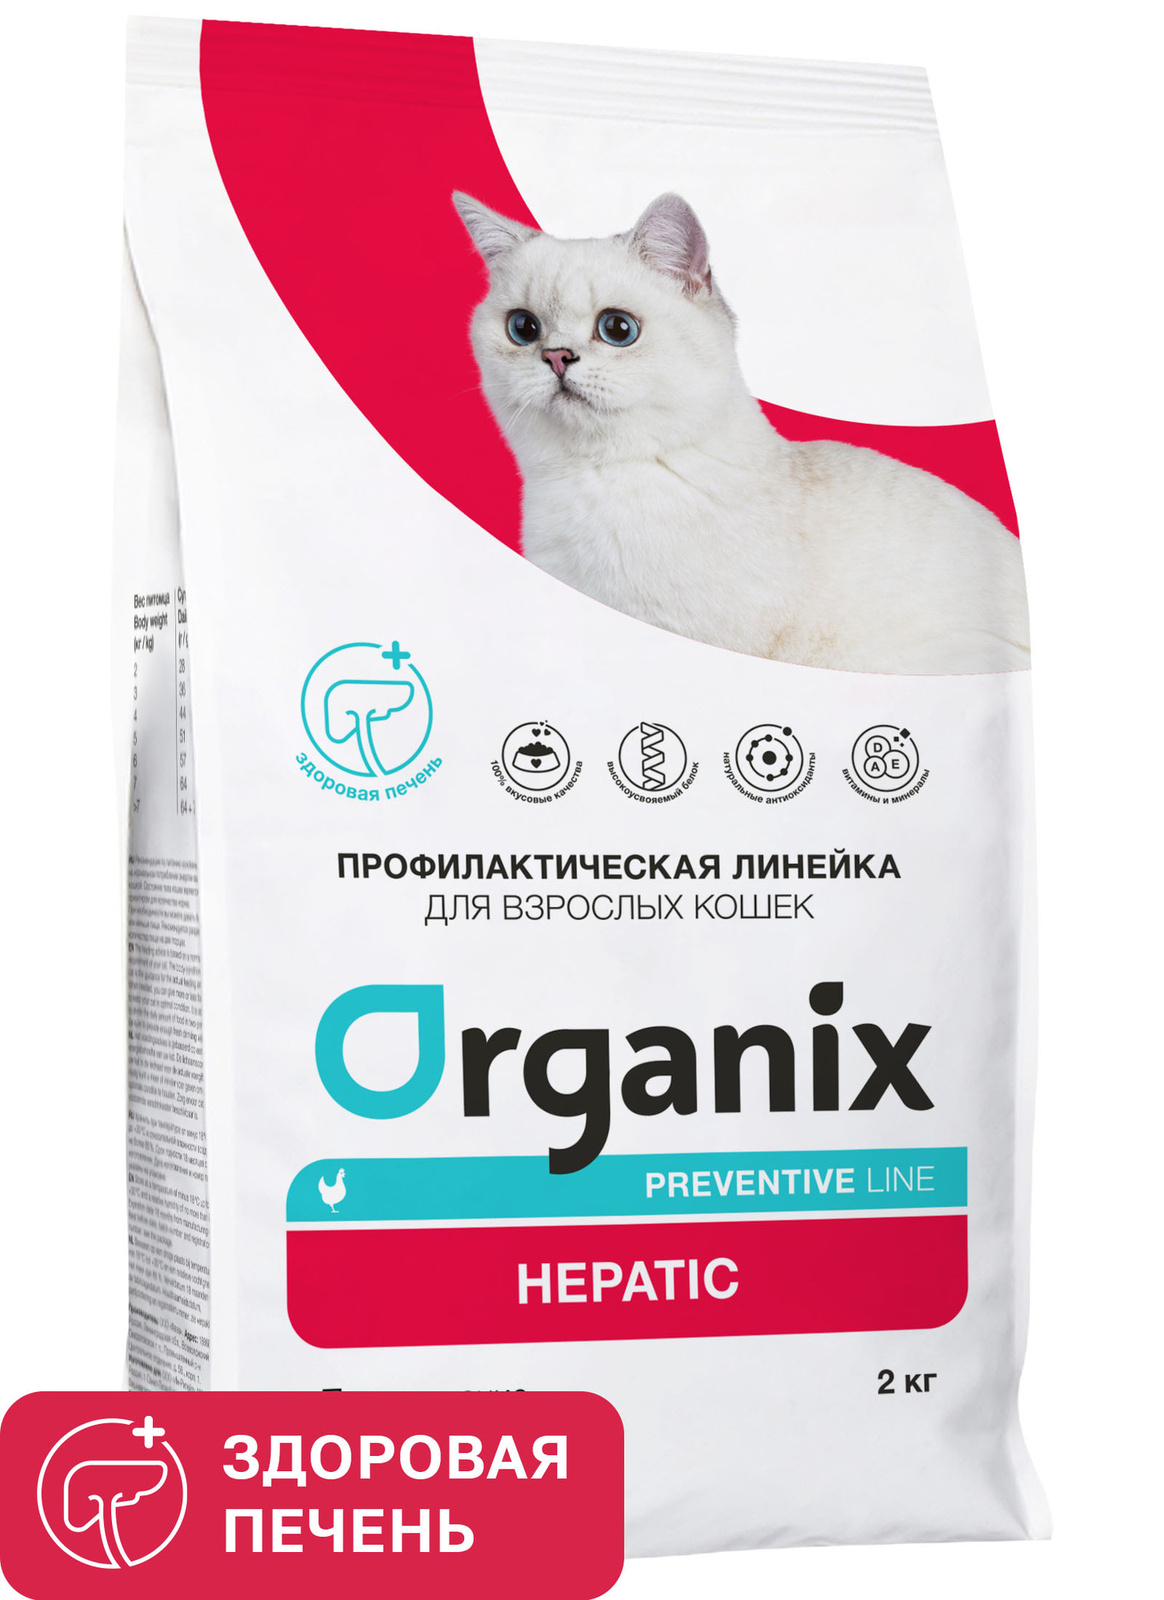 Organix Preventive Line Organix Preventive Line hepatic сухой корм для кошек Поддержание здоровья печени (600 г) florida preventive line hepatic полнорационный сухой корм для кошек поддержание здоровья печени 500 г